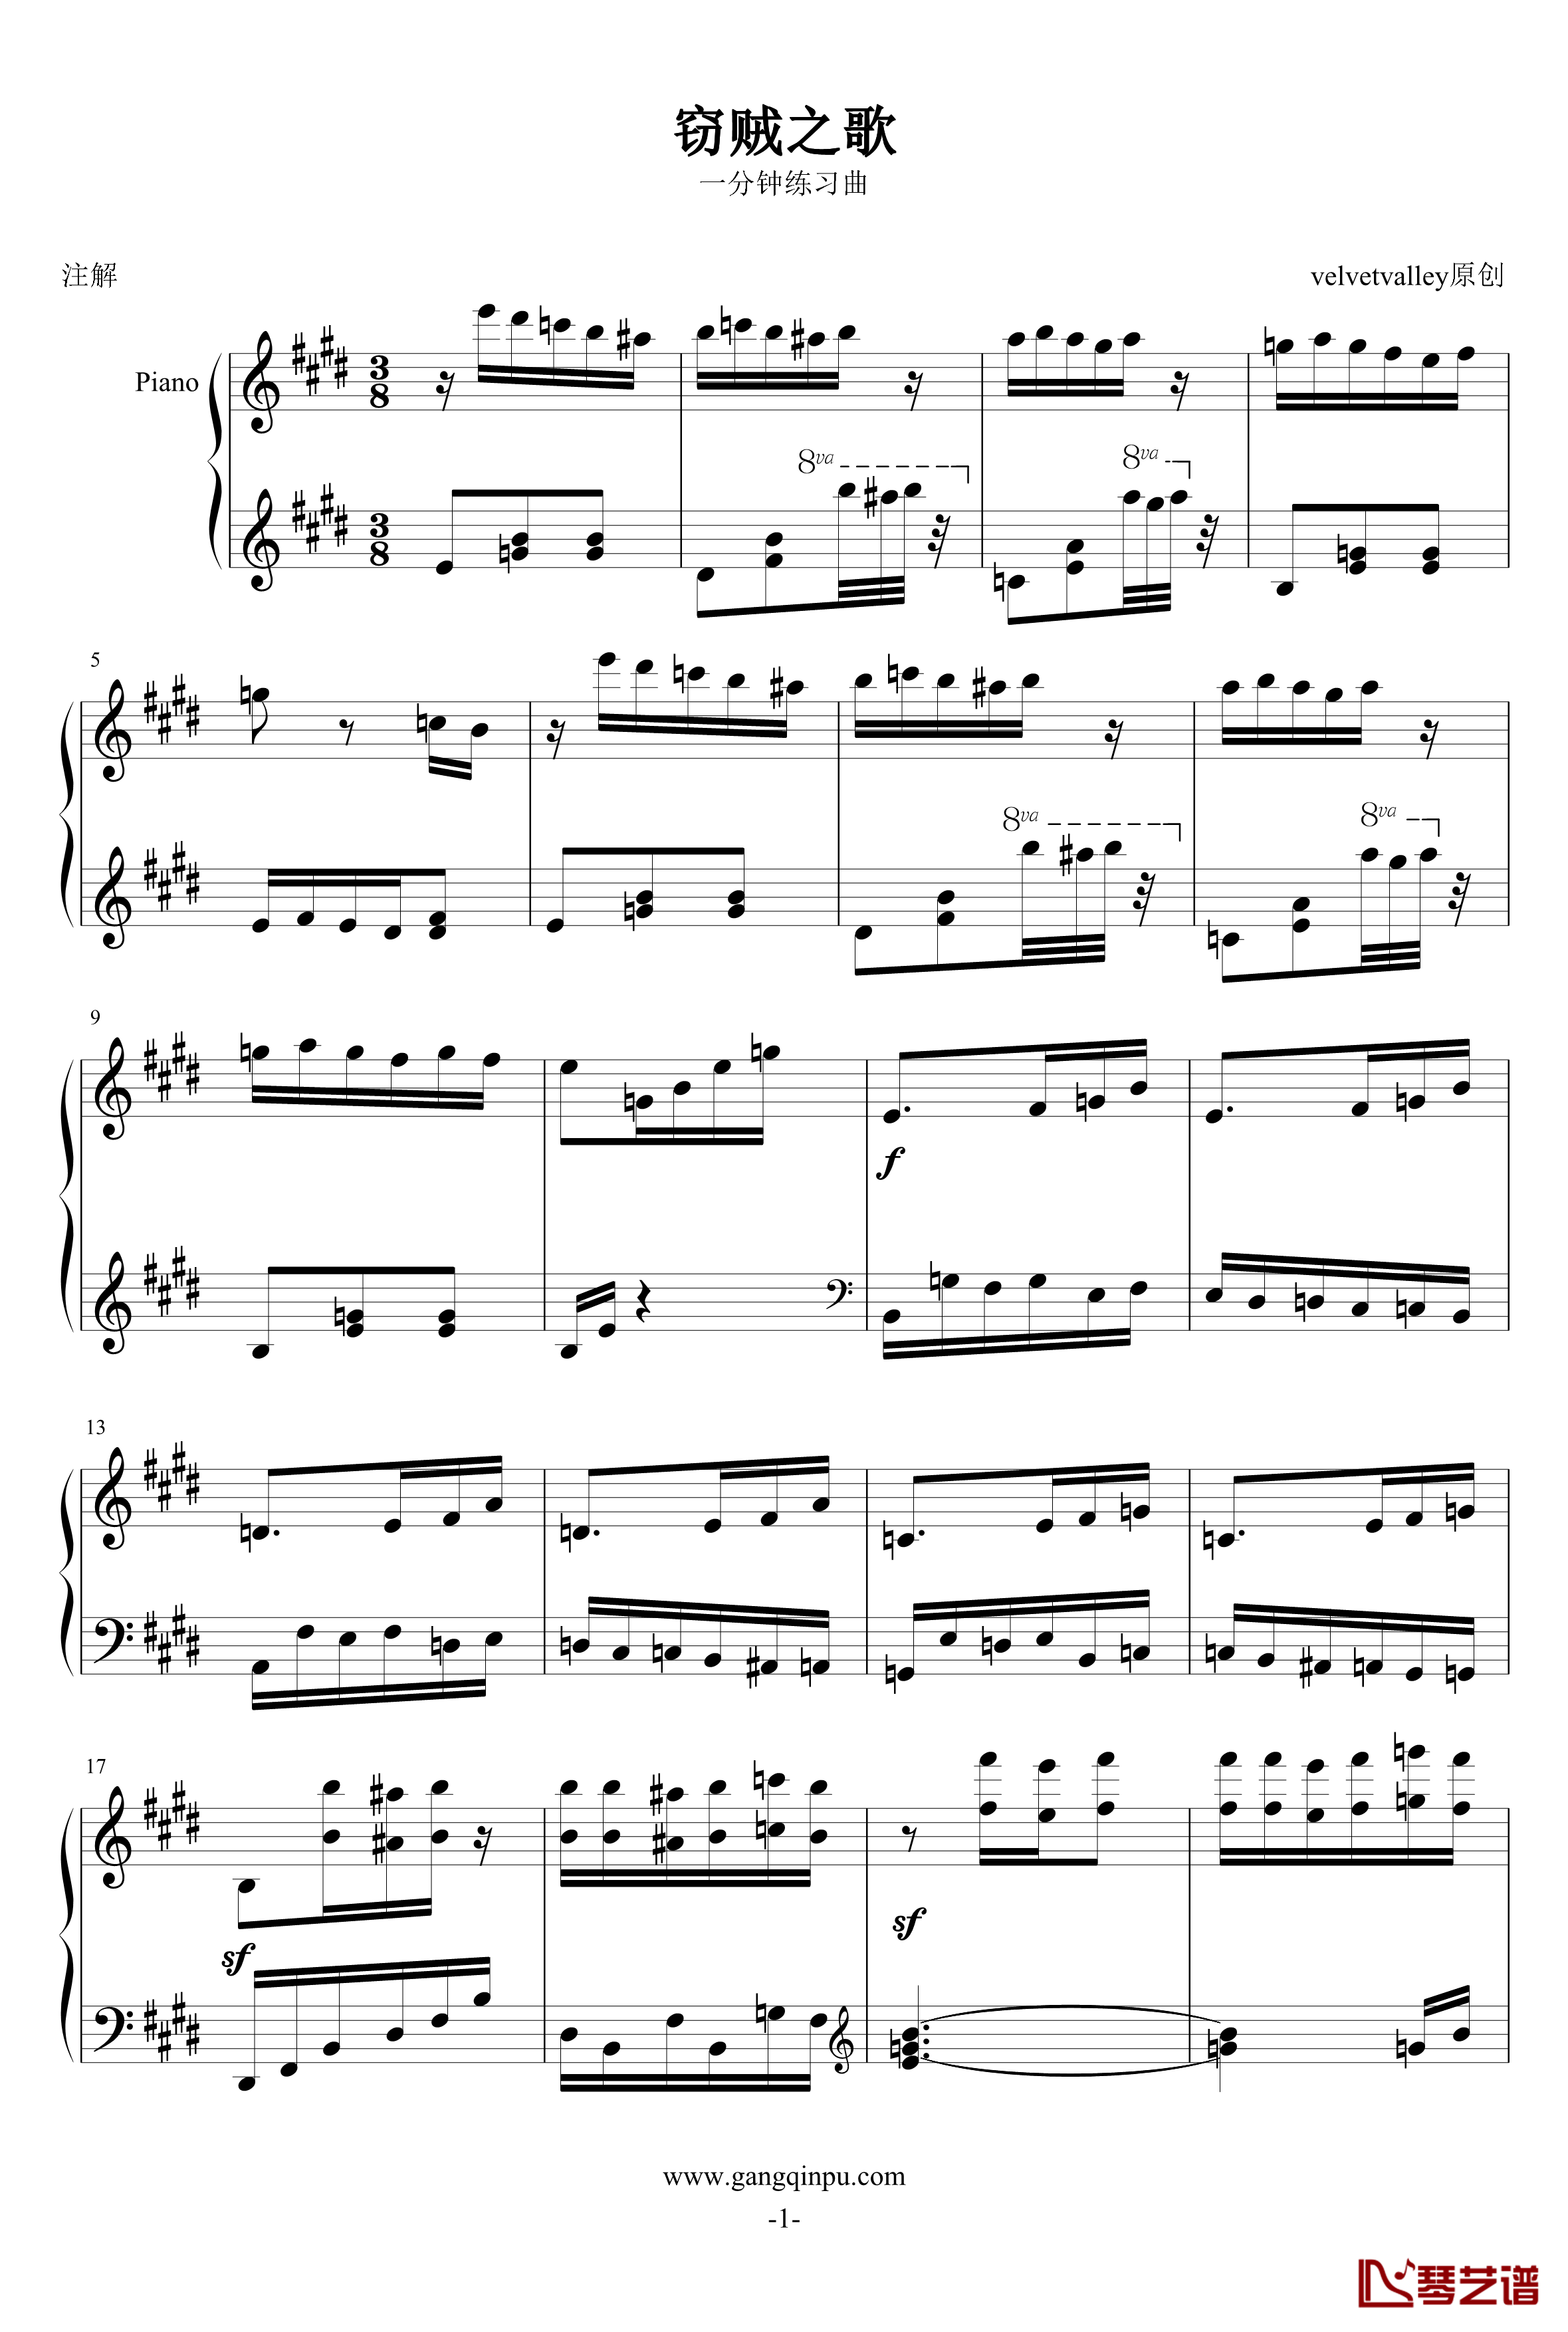 窃贼之歌钢琴谱-一分钟练习曲-velvetvalley1